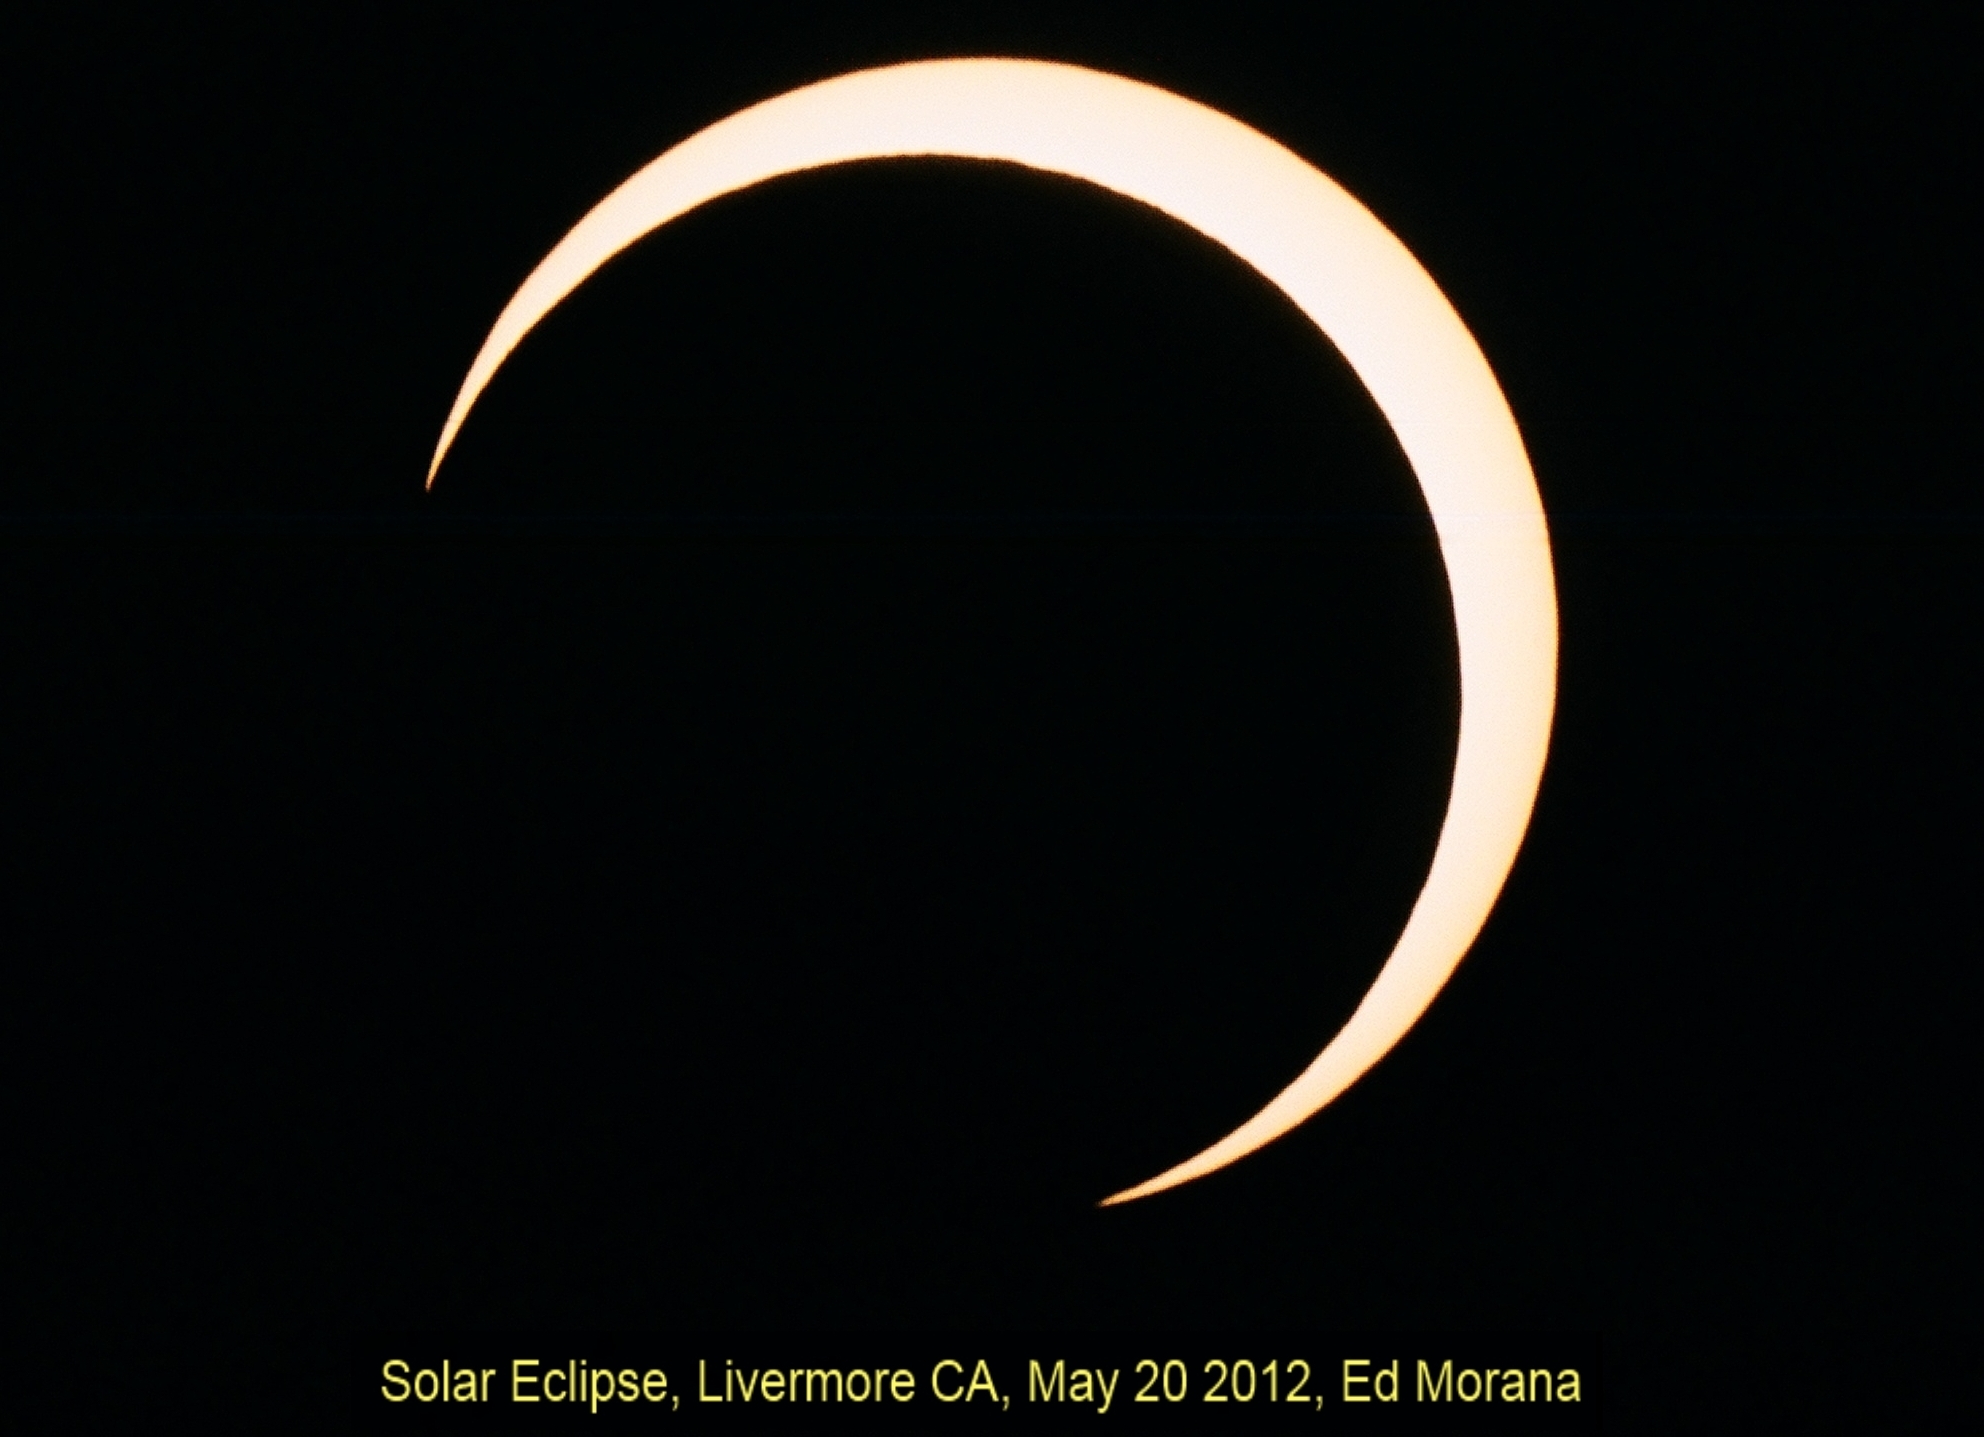 Solar Eclipse -- Maximum